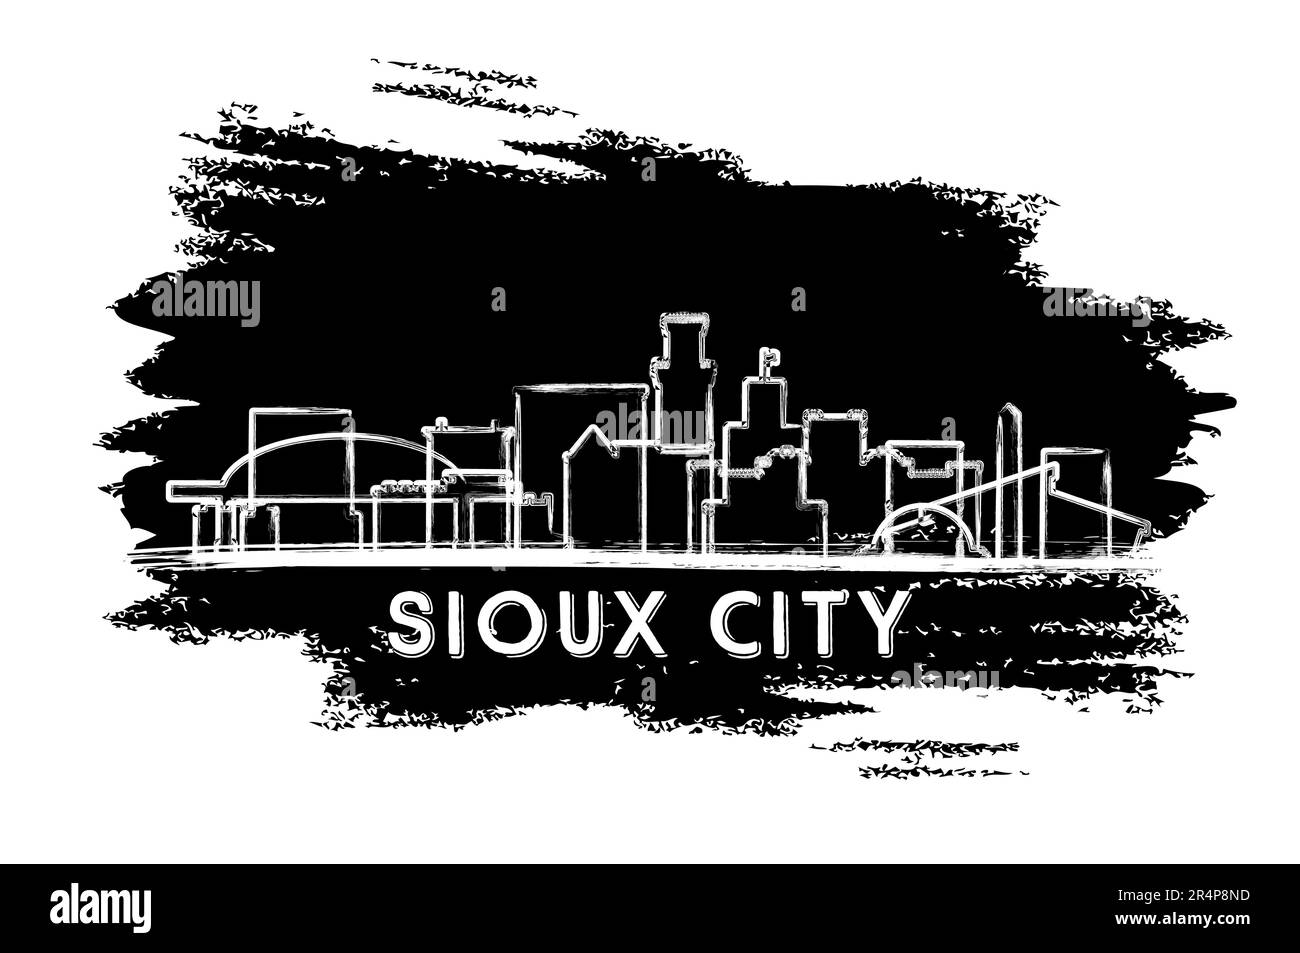 Sioux City Iowa USA Skyline Silhouette. Esquisse dessinée à la main. Concept de voyage d'affaires et de tourisme avec architecture historique. Illustration vectorielle. Illustration de Vecteur